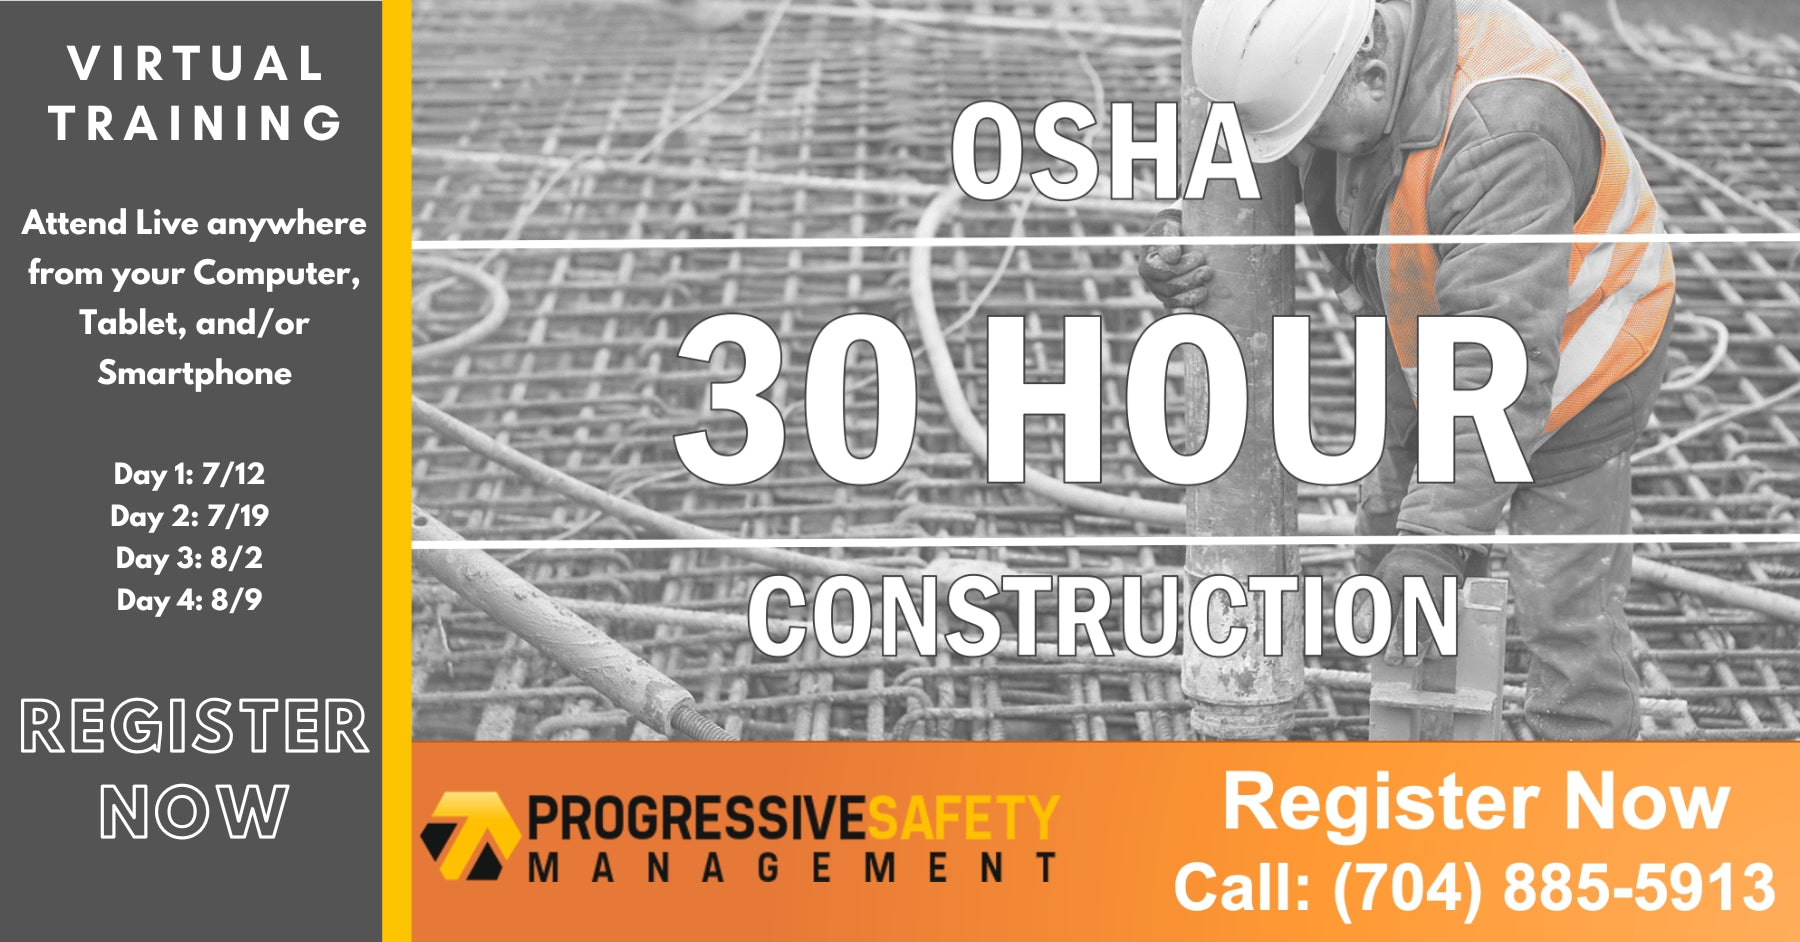 OSHA 30 - Construction Virtual Instructor-Led Training